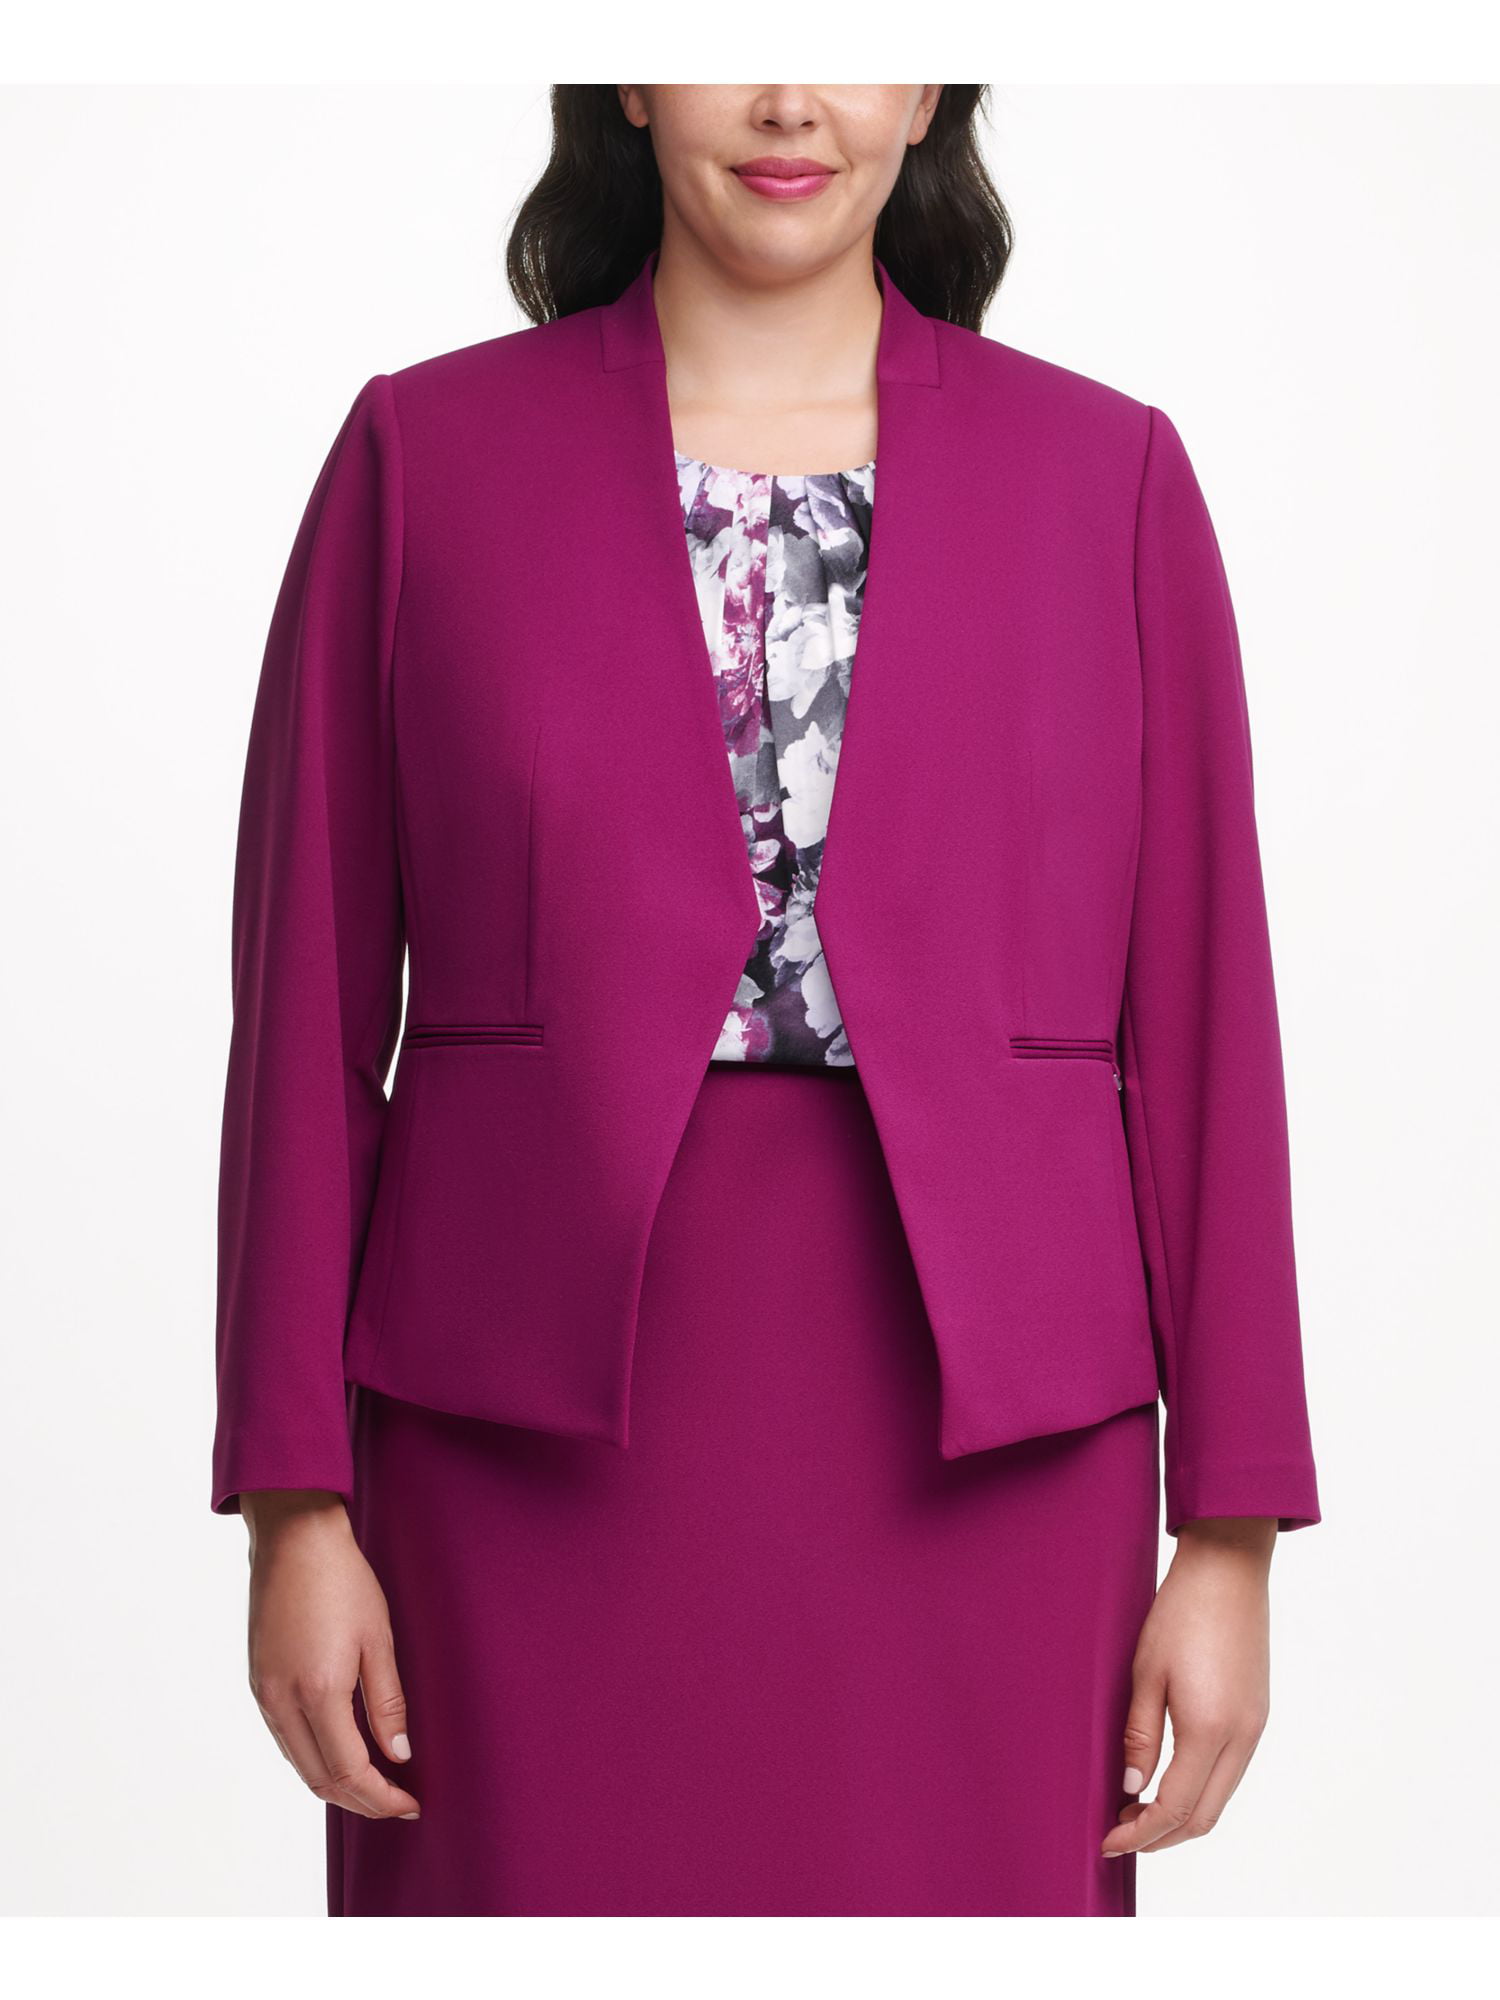 CALVIN KLEIN Womens Purple Asymmetrical Cropped Blazer Jacket Plus Size:  20W 